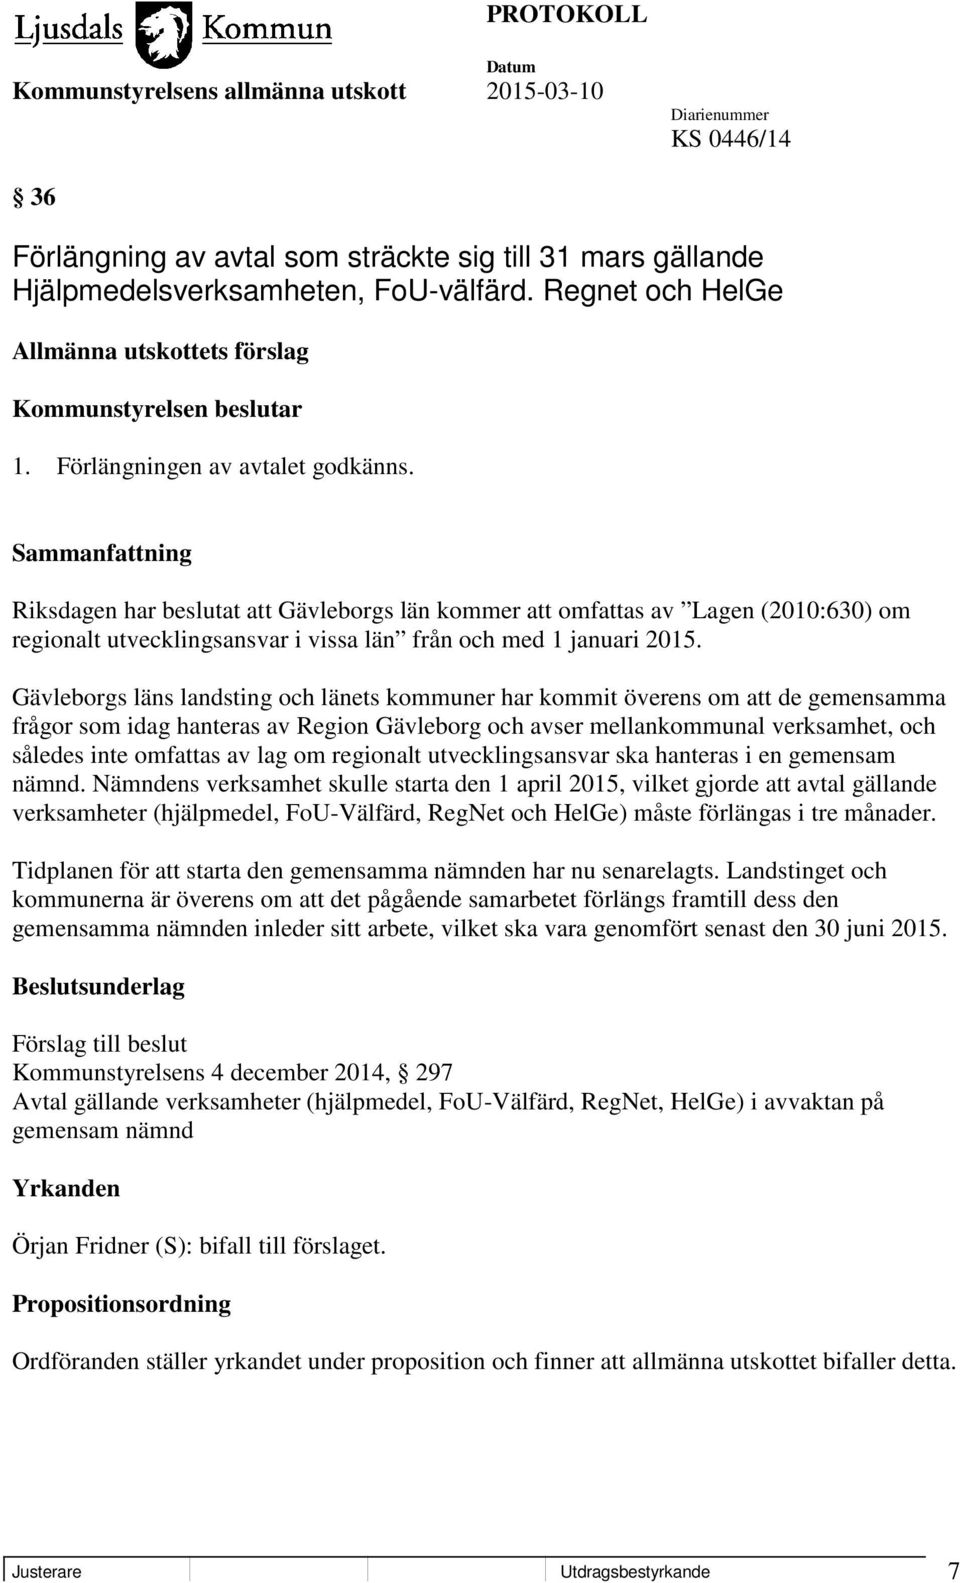 Gävleborgs läns landsting och länets kommuner har kommit överens om att de gemensamma frågor som idag hanteras av Region Gävleborg och avser mellankommunal verksamhet, och således inte omfattas av